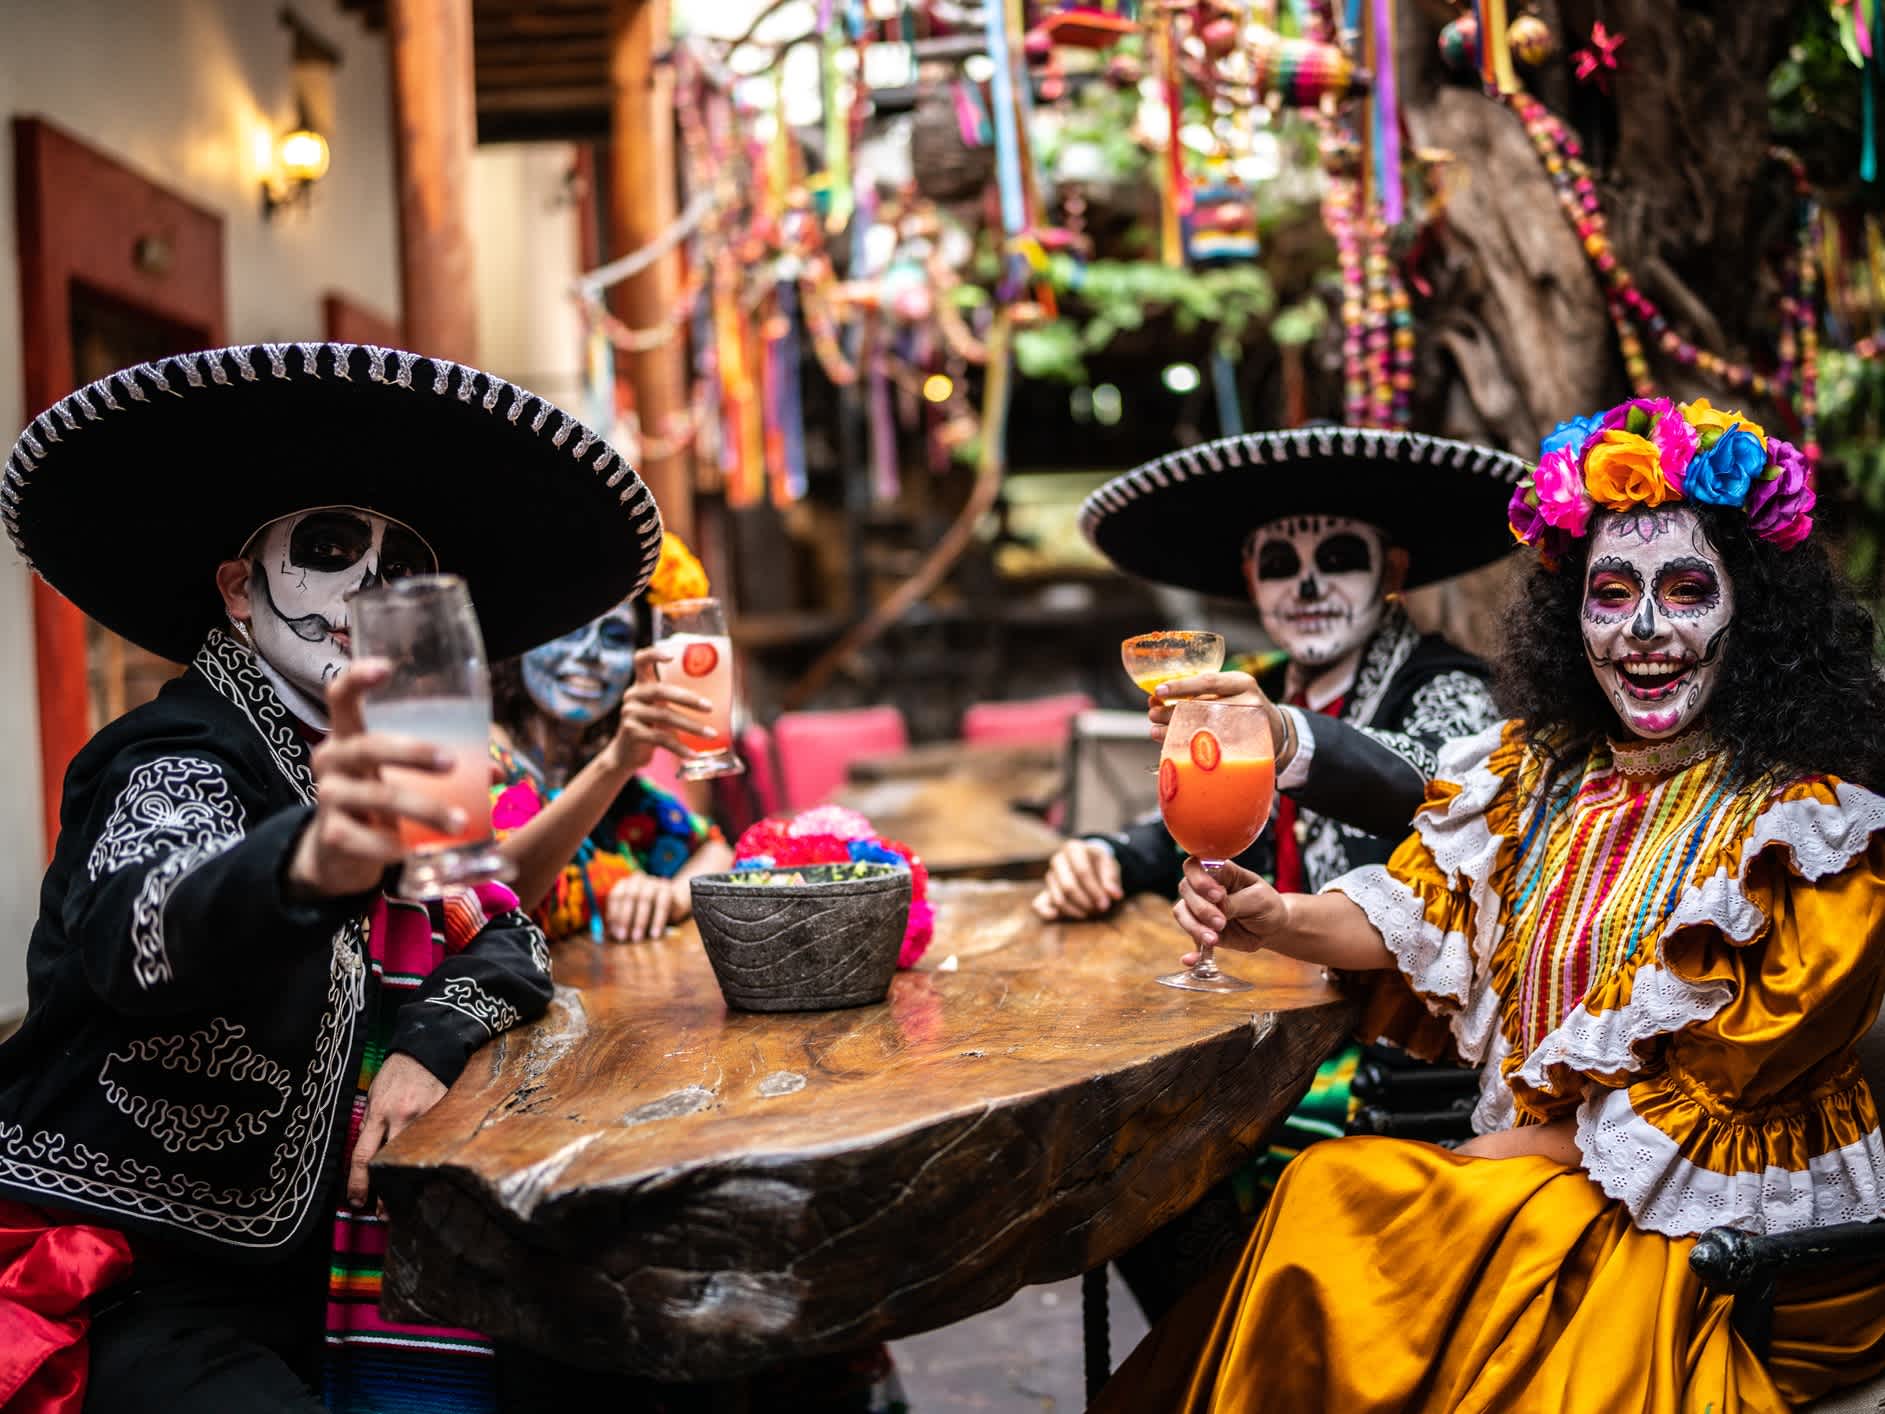 4 tanzende Menschen tragen bunte Trachten und ein Totenkopf-Make-Up zu Ehren des Día de los Muertos